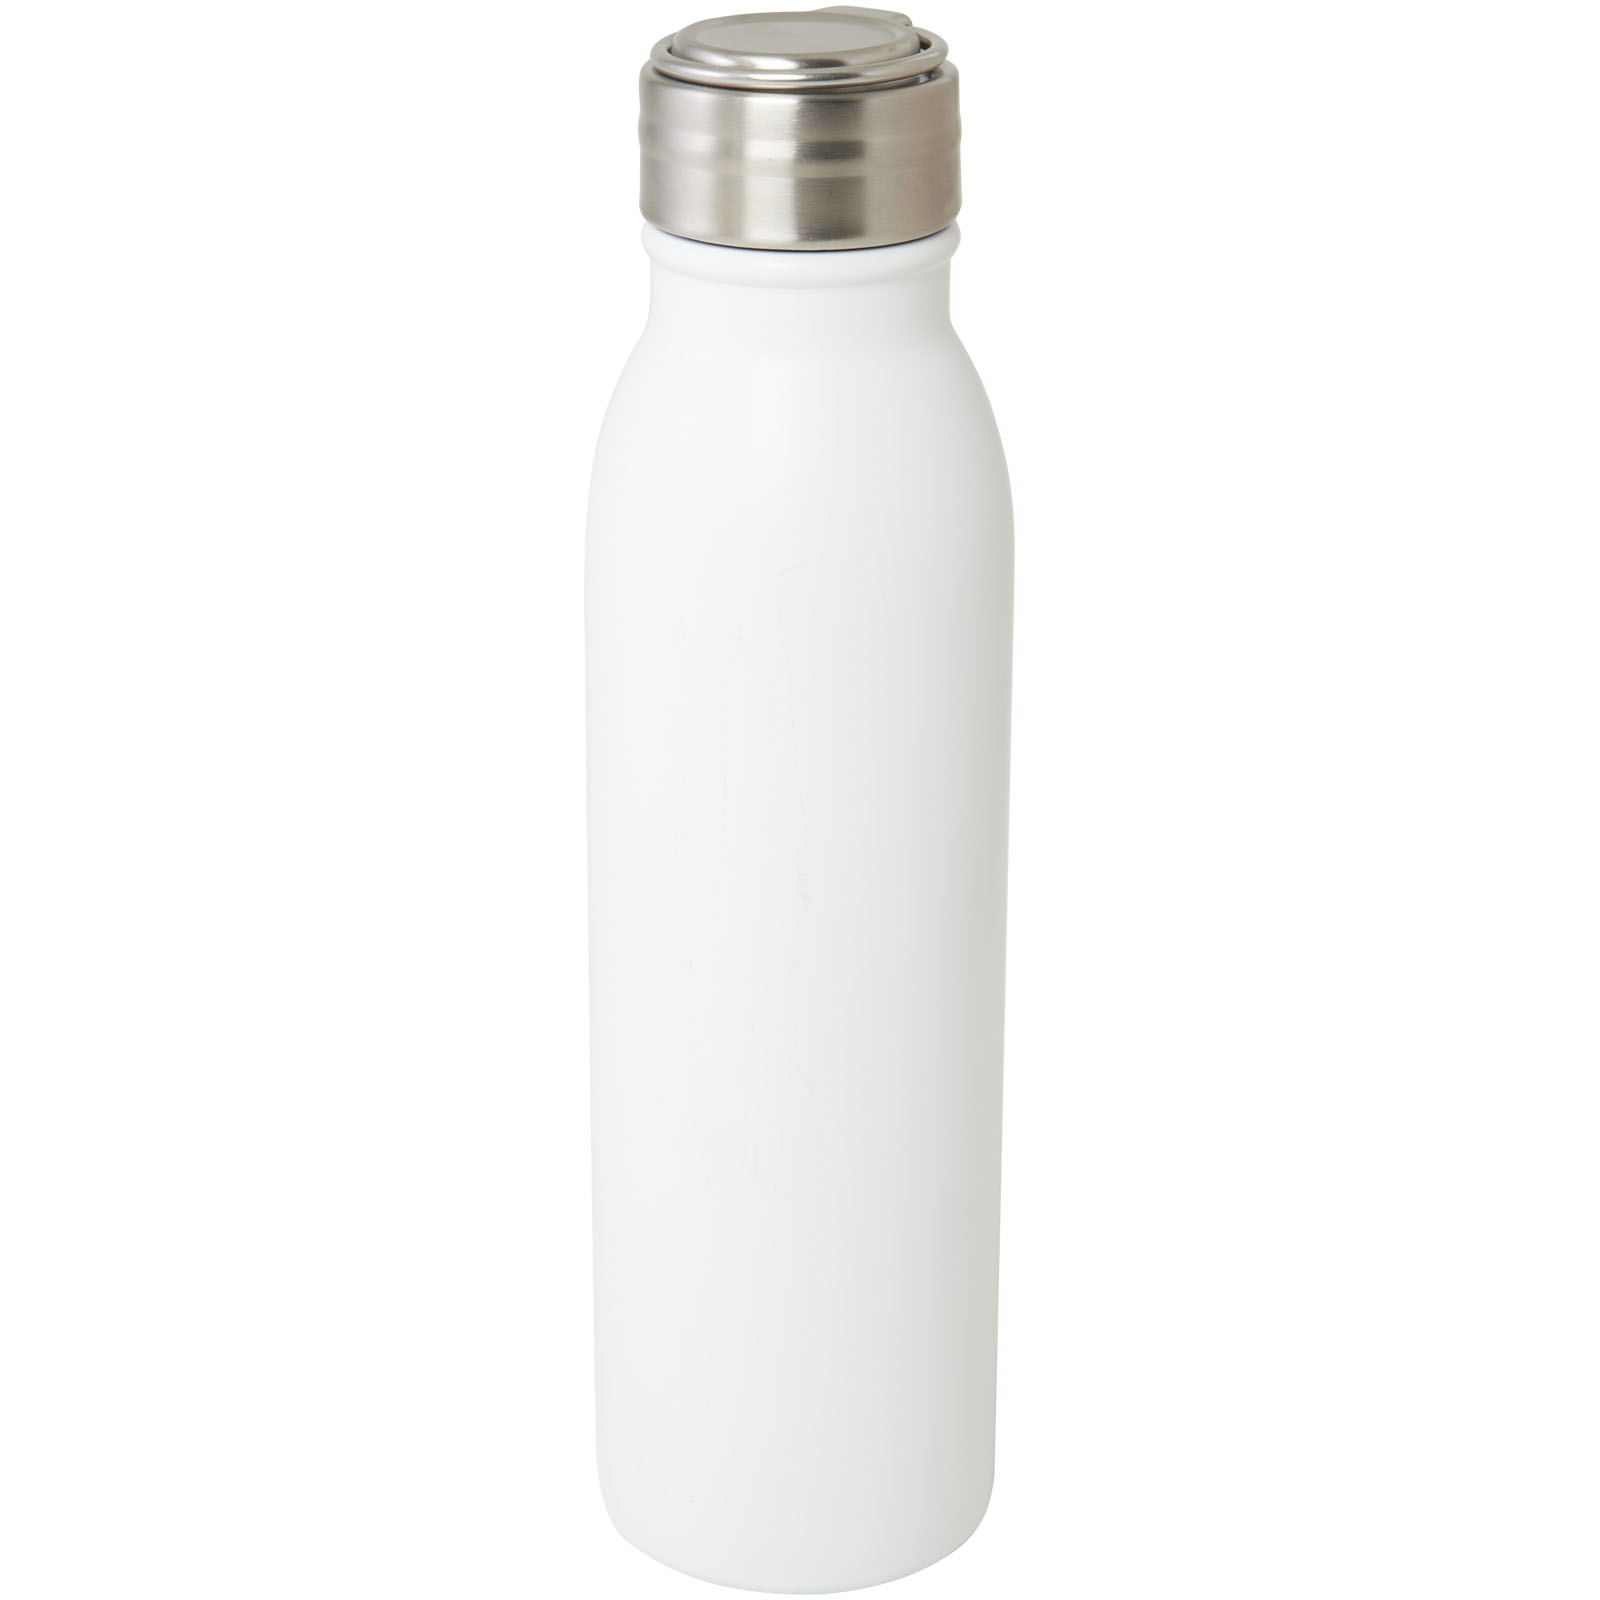 Advertising Water bottles - Harper 700 ml RCS certified stainless steel water bottle with metal loop - 0